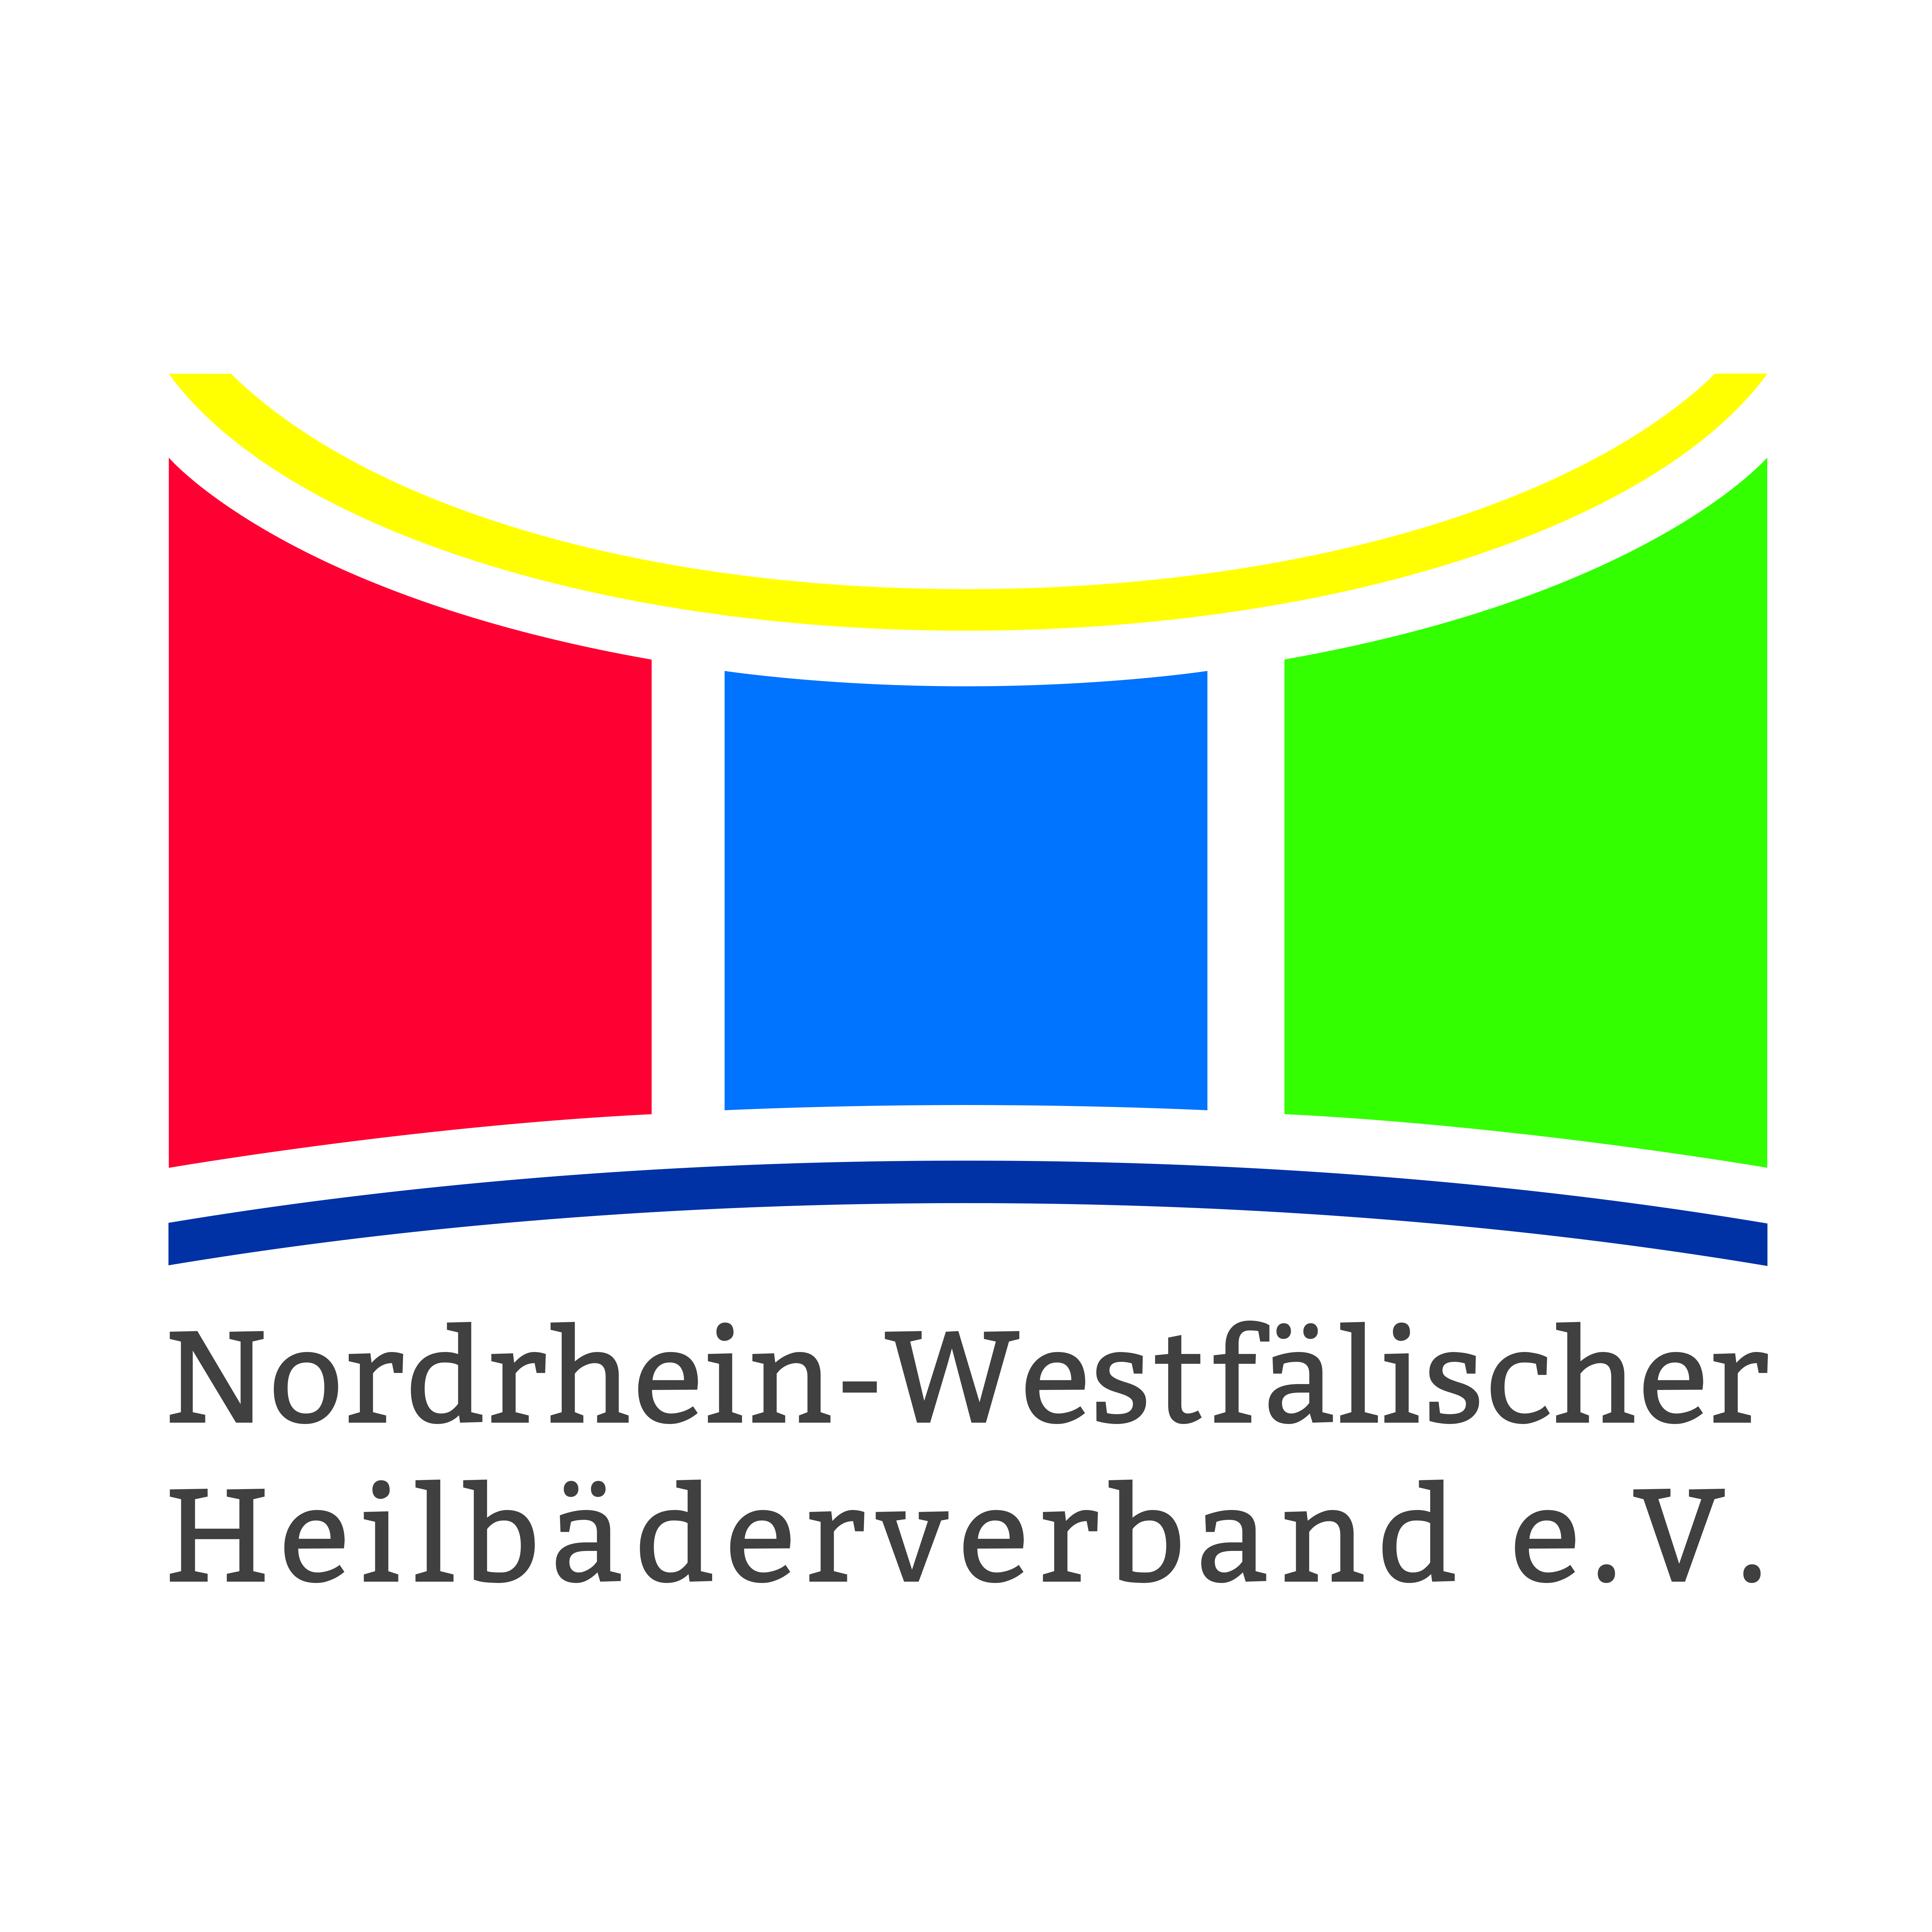 Nordrhein-Westfälischer Heilbäderverband e.V. © Nordrhein-Westfälischer Heilbäderverband e.V.